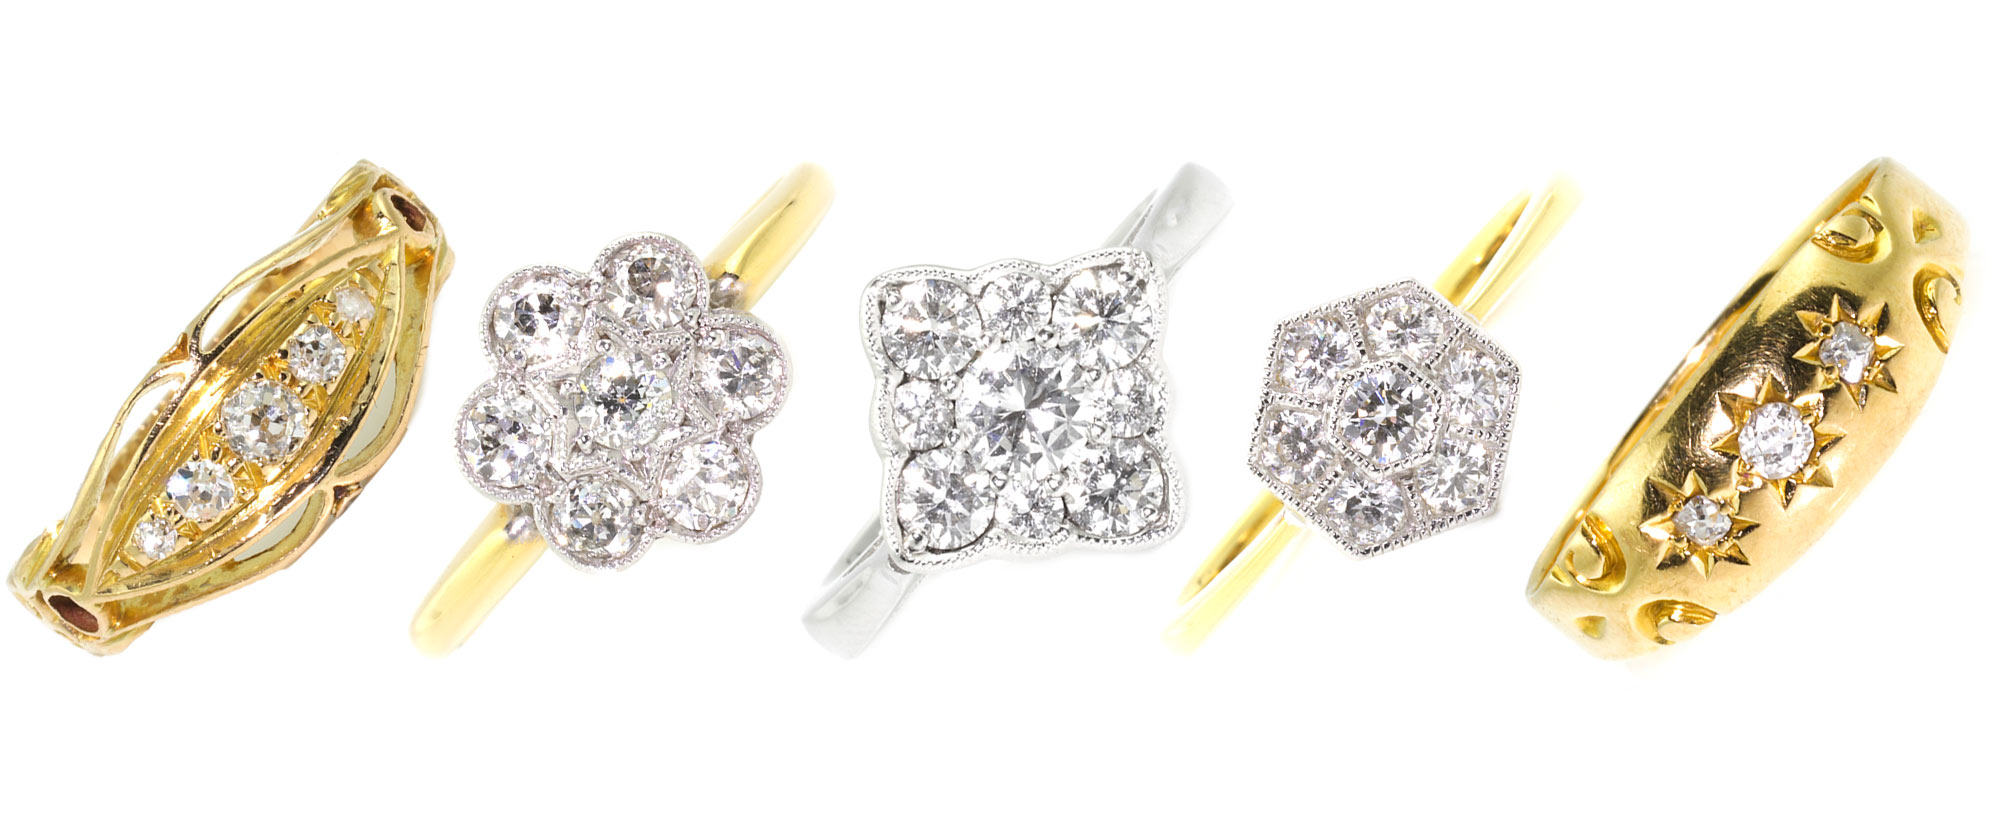 Diamond ring selection Studleys Jewellers Wells UK